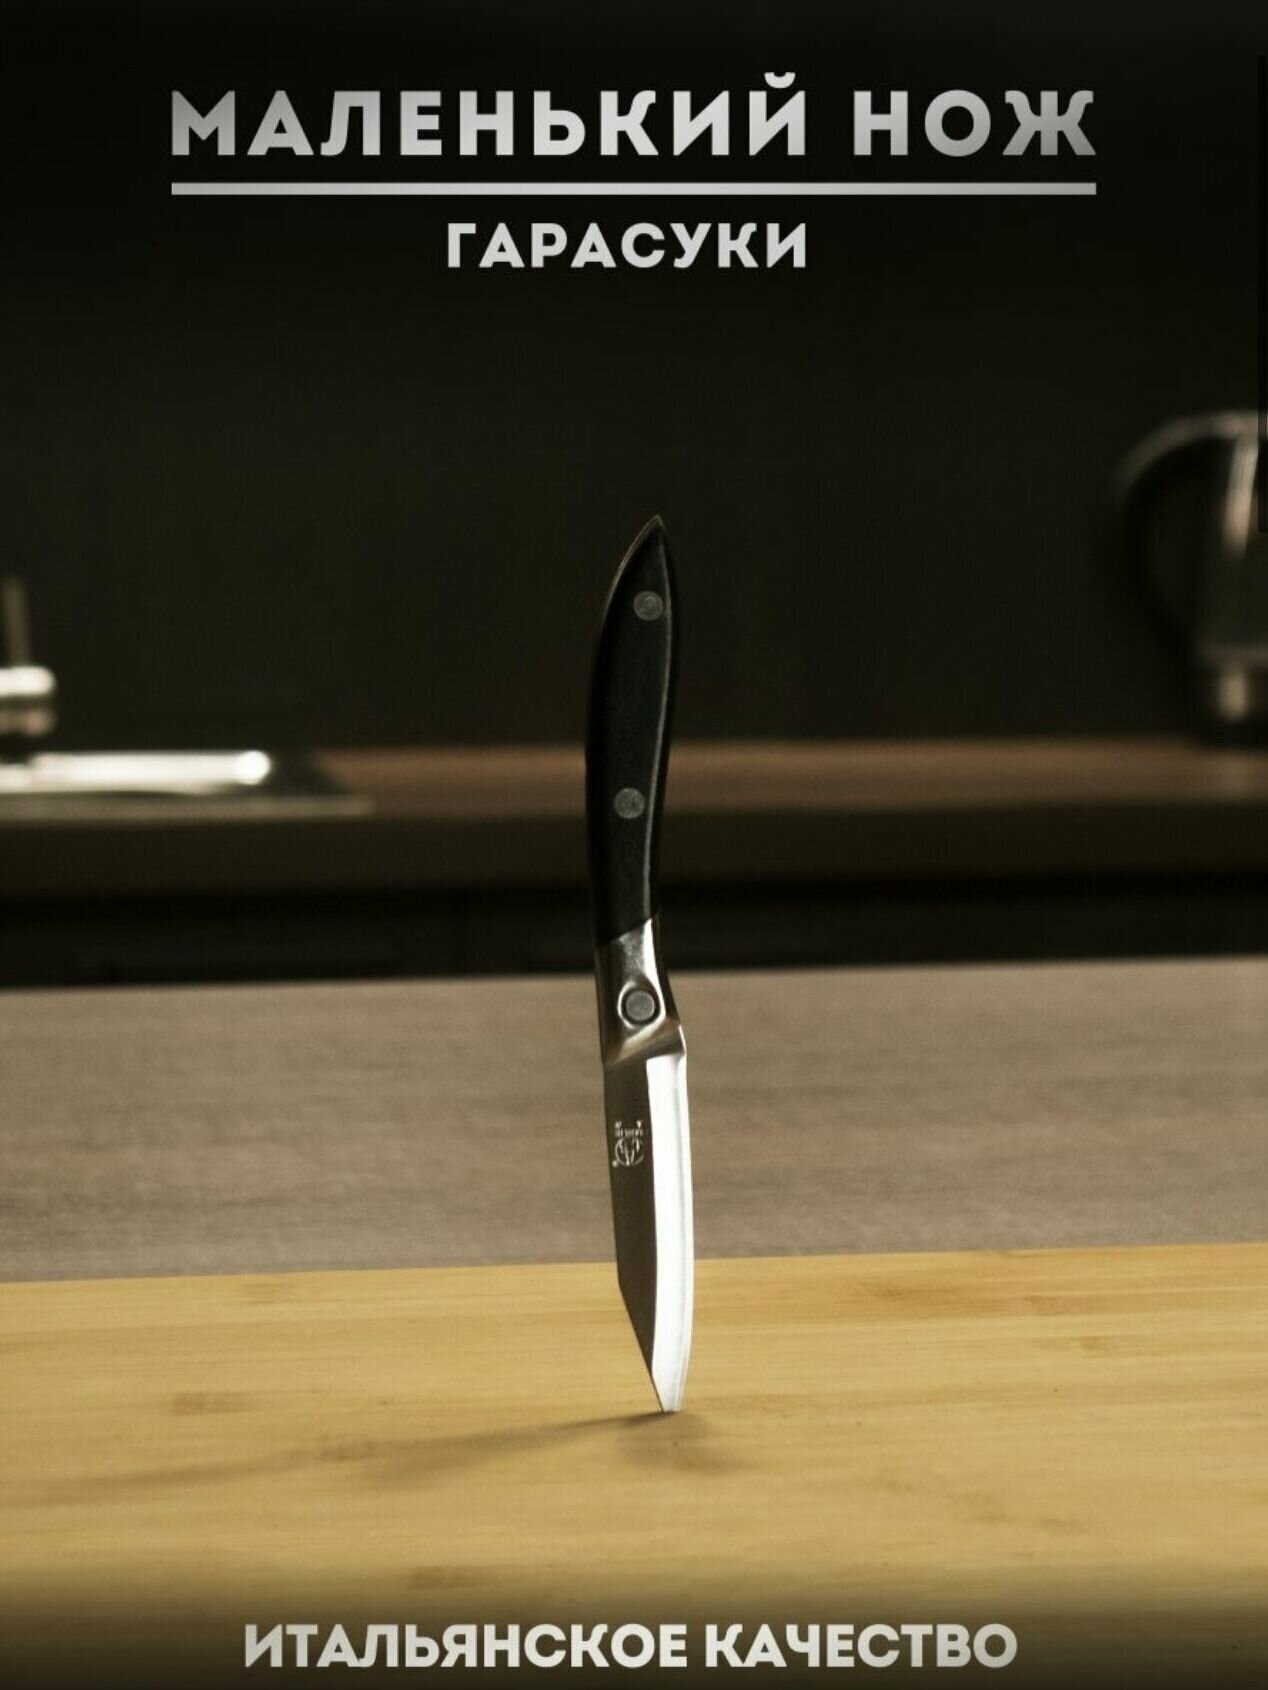 Кухонных нож 'Sanliu 666' маленький нож гарасуки очень острый 18см